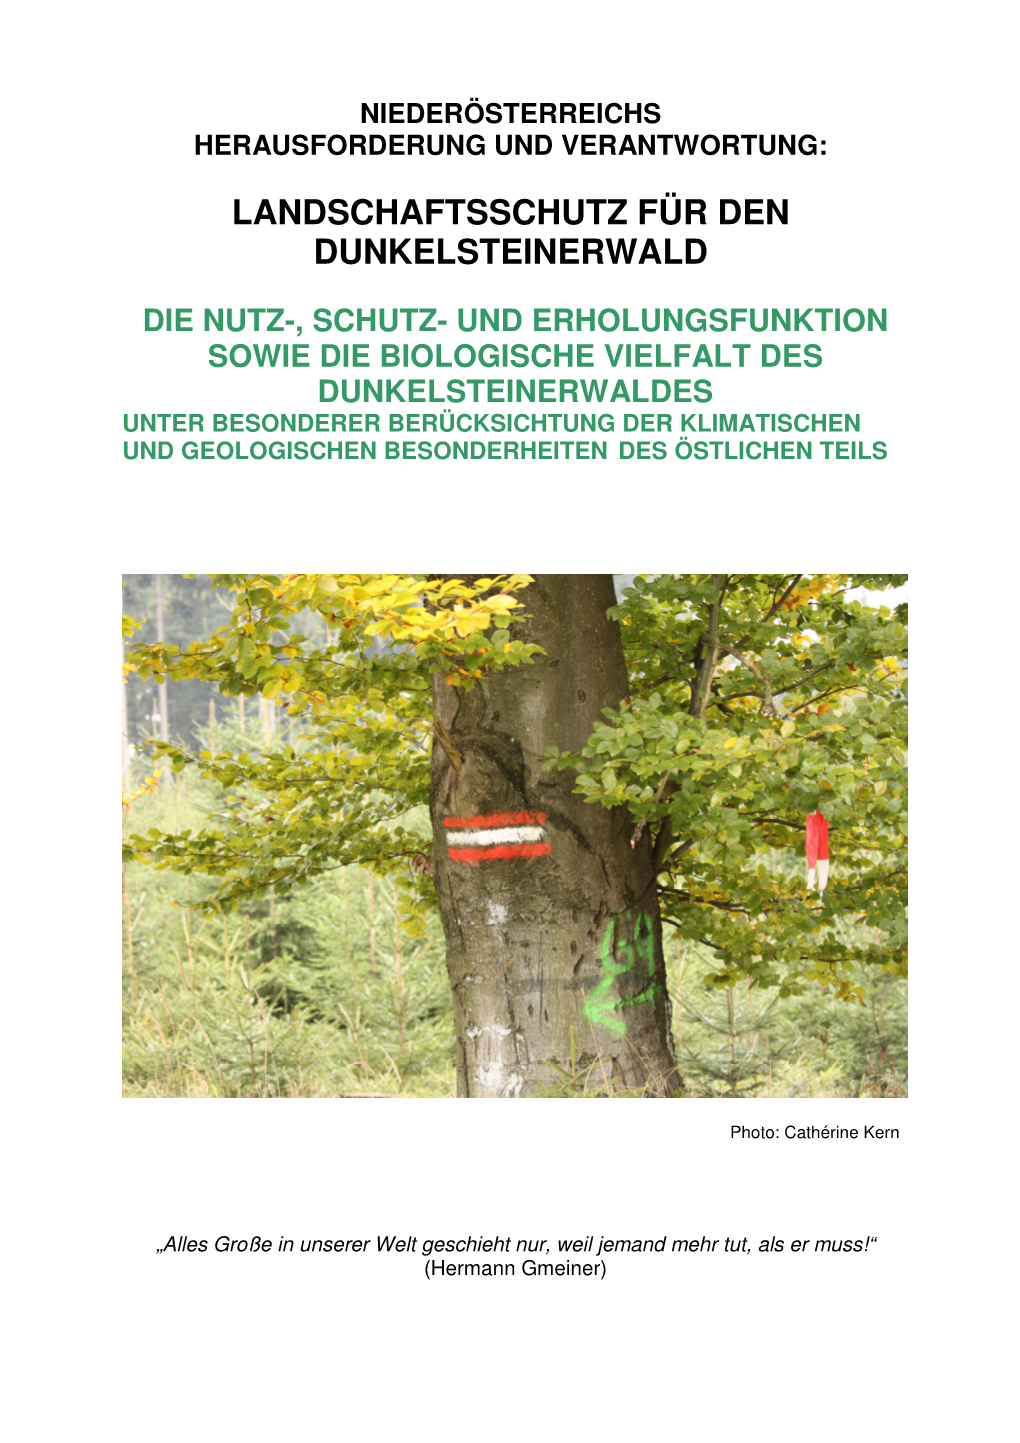 Studie Zur Biodiversität Dunkelsteinerwald